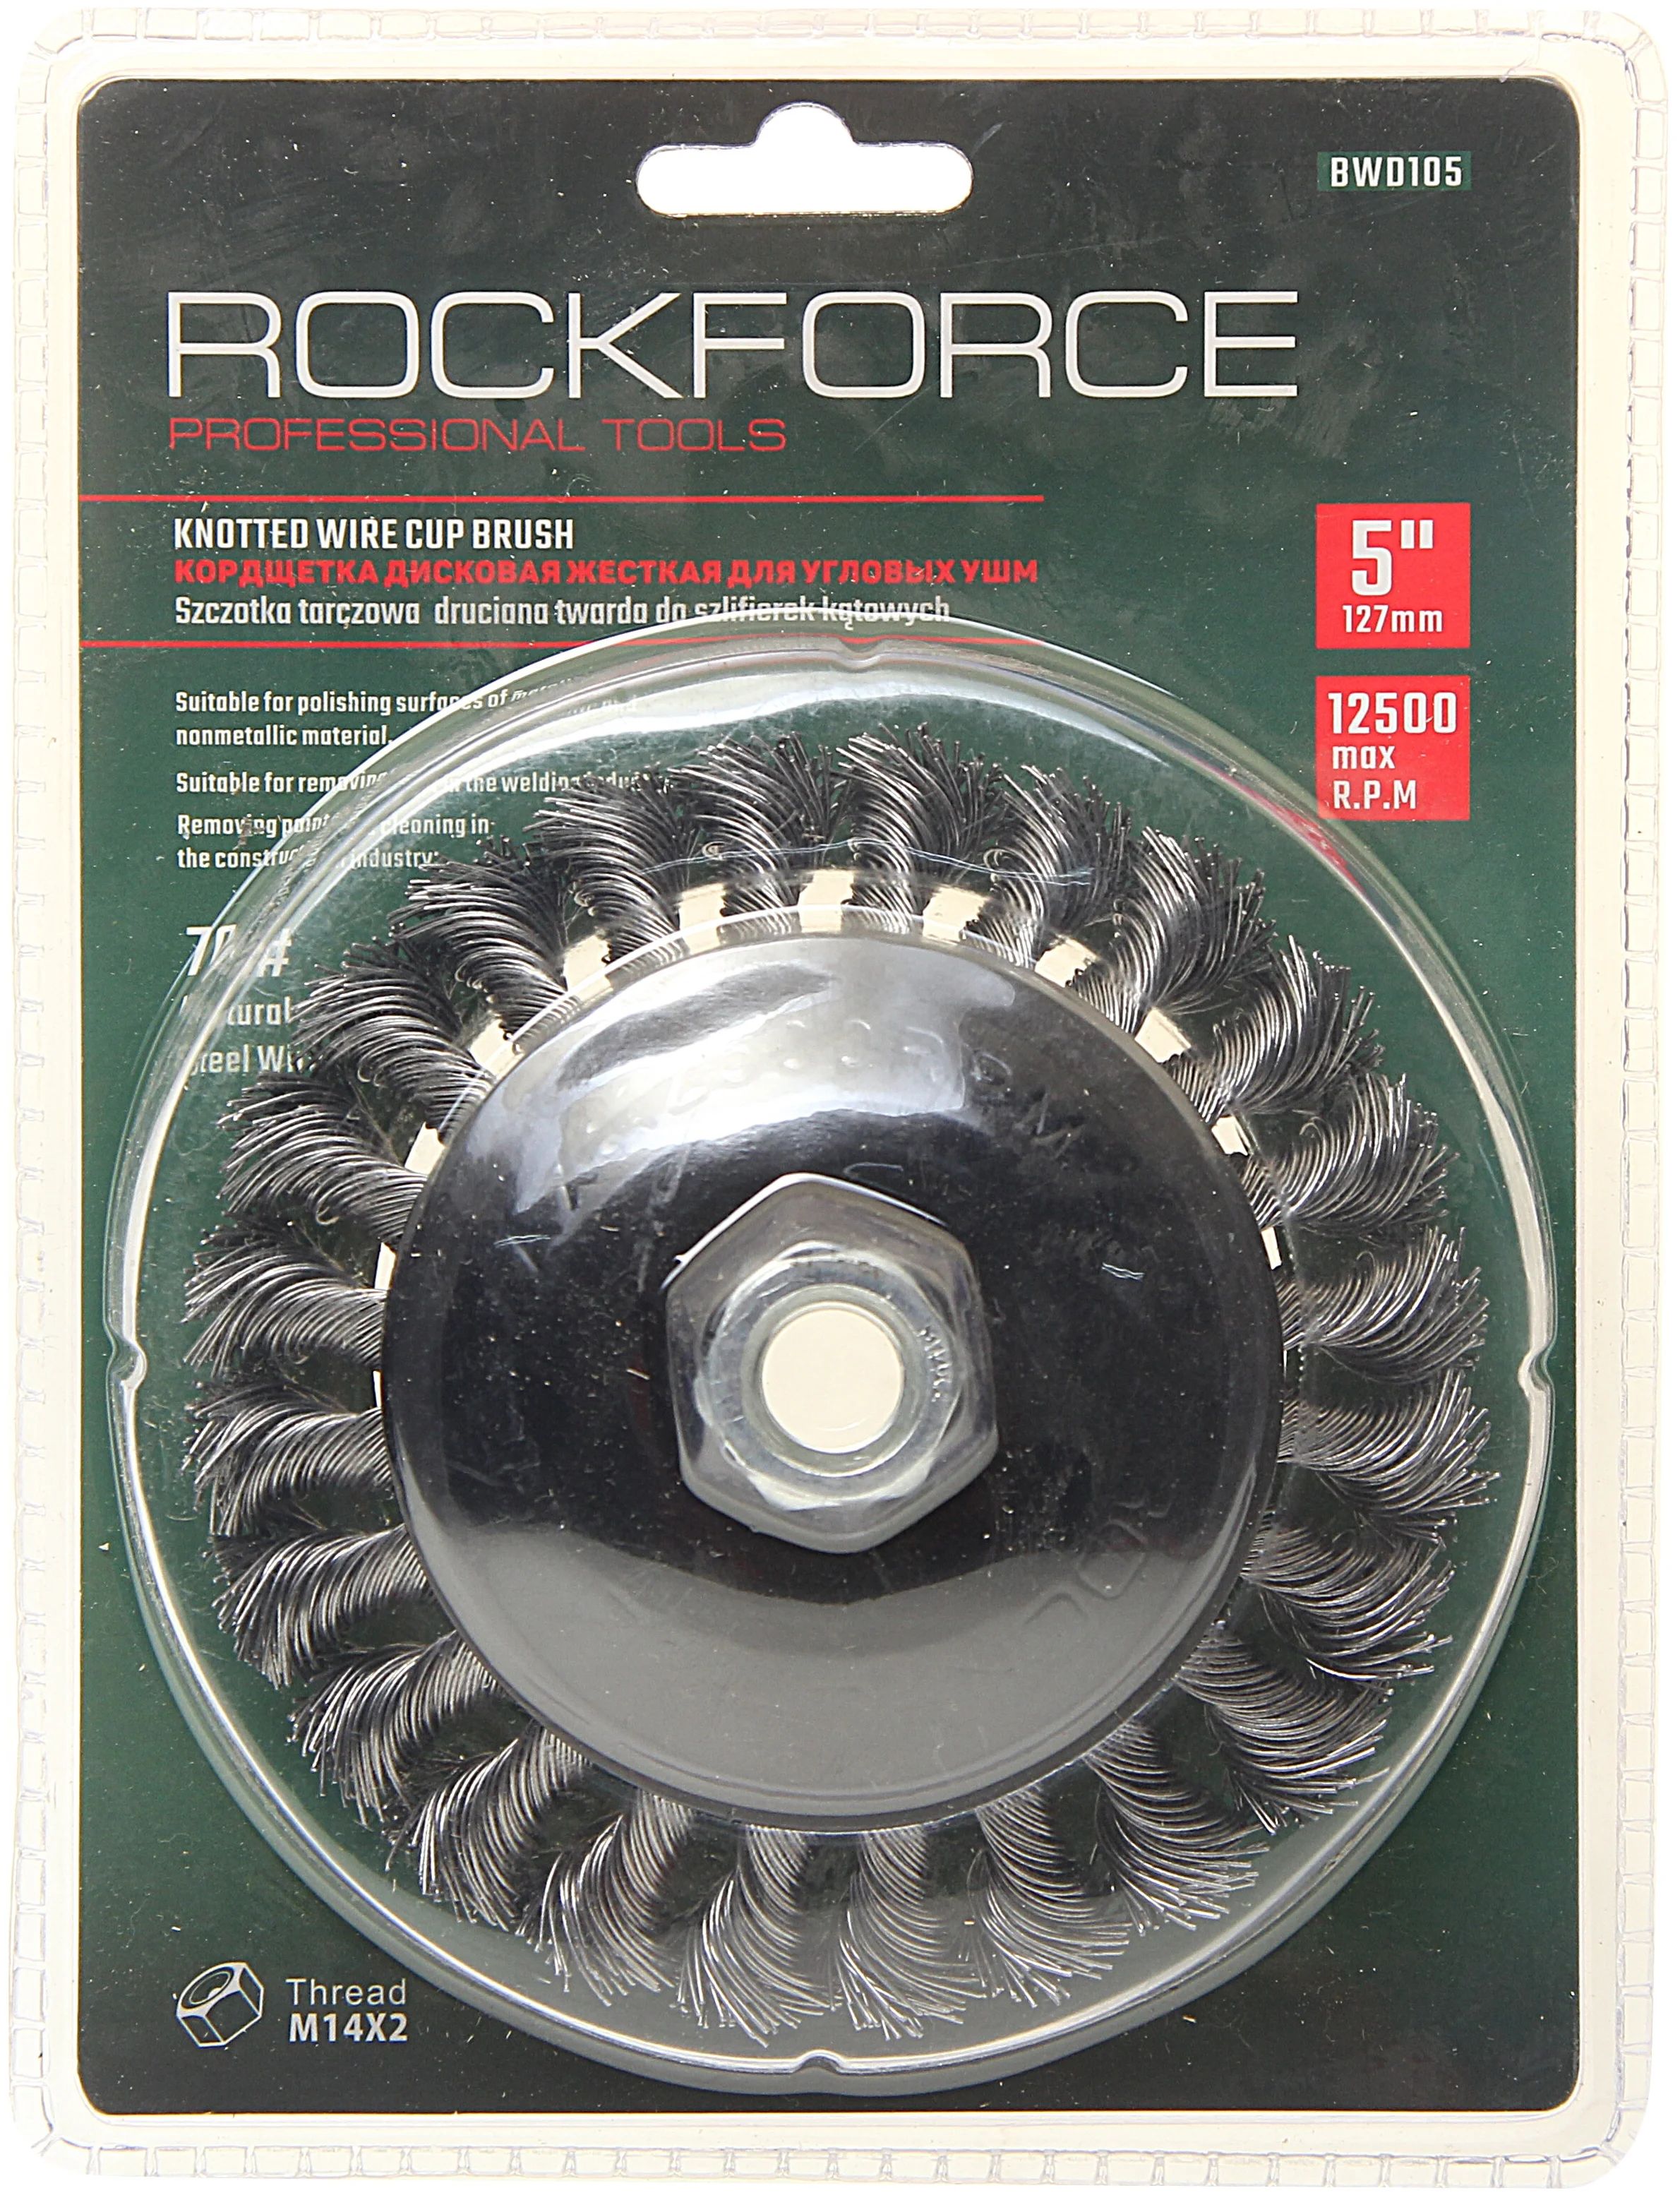 Кордщетка для УШМ дисковая получаша 125мм витая сталь в блистере кордщетка дисковая латунная для ушм 125мм в блистере rockforce 1